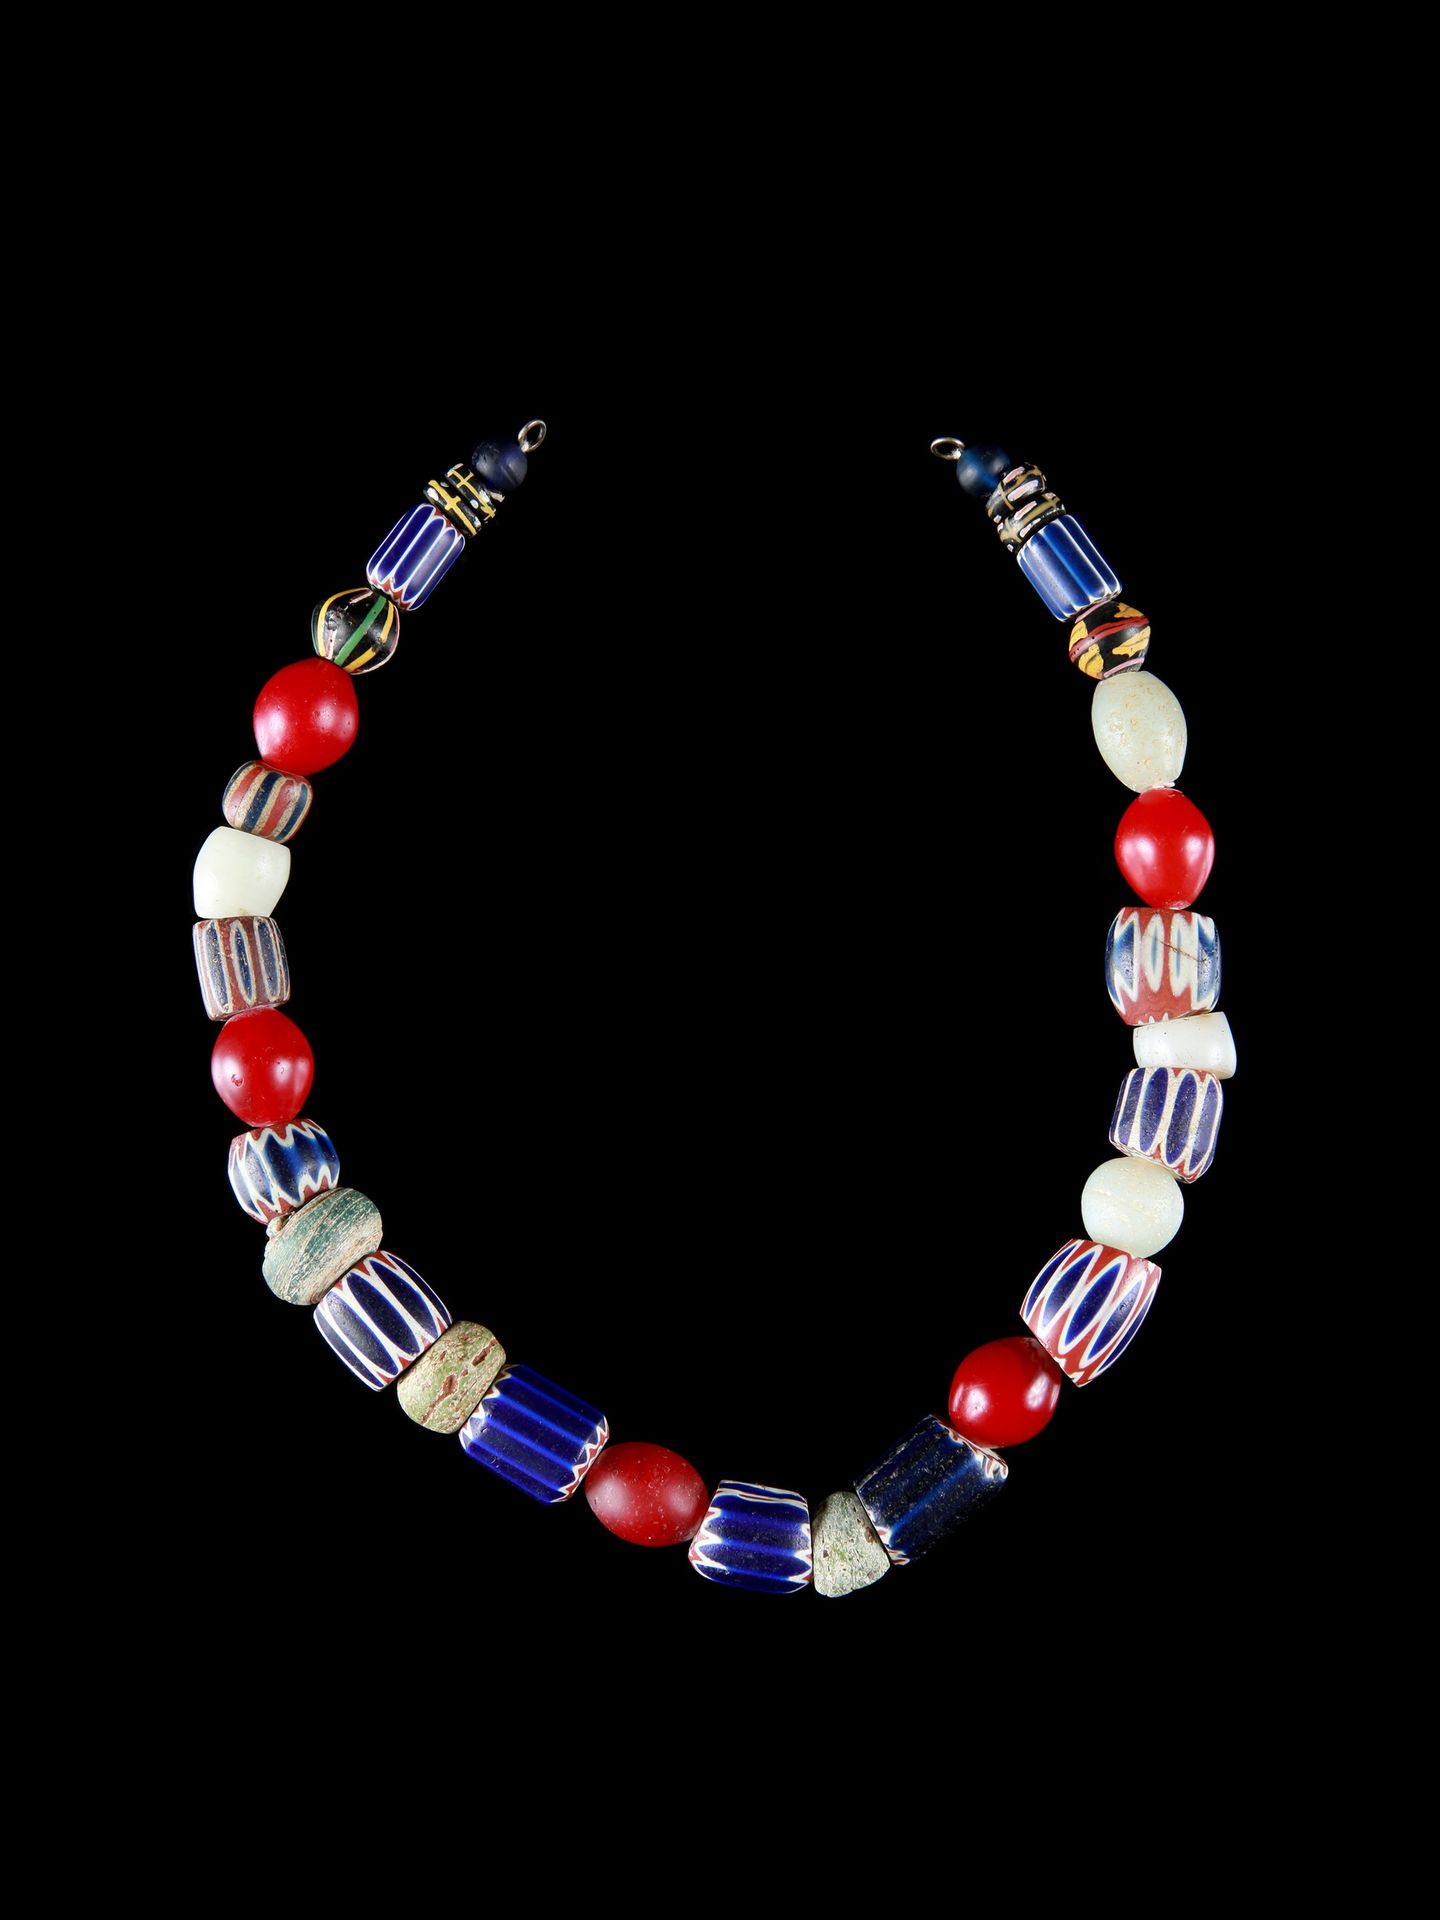 A Glass Beads Necklace Collana di perle di vetro

Italia / Africa occidentale

O&hellip;